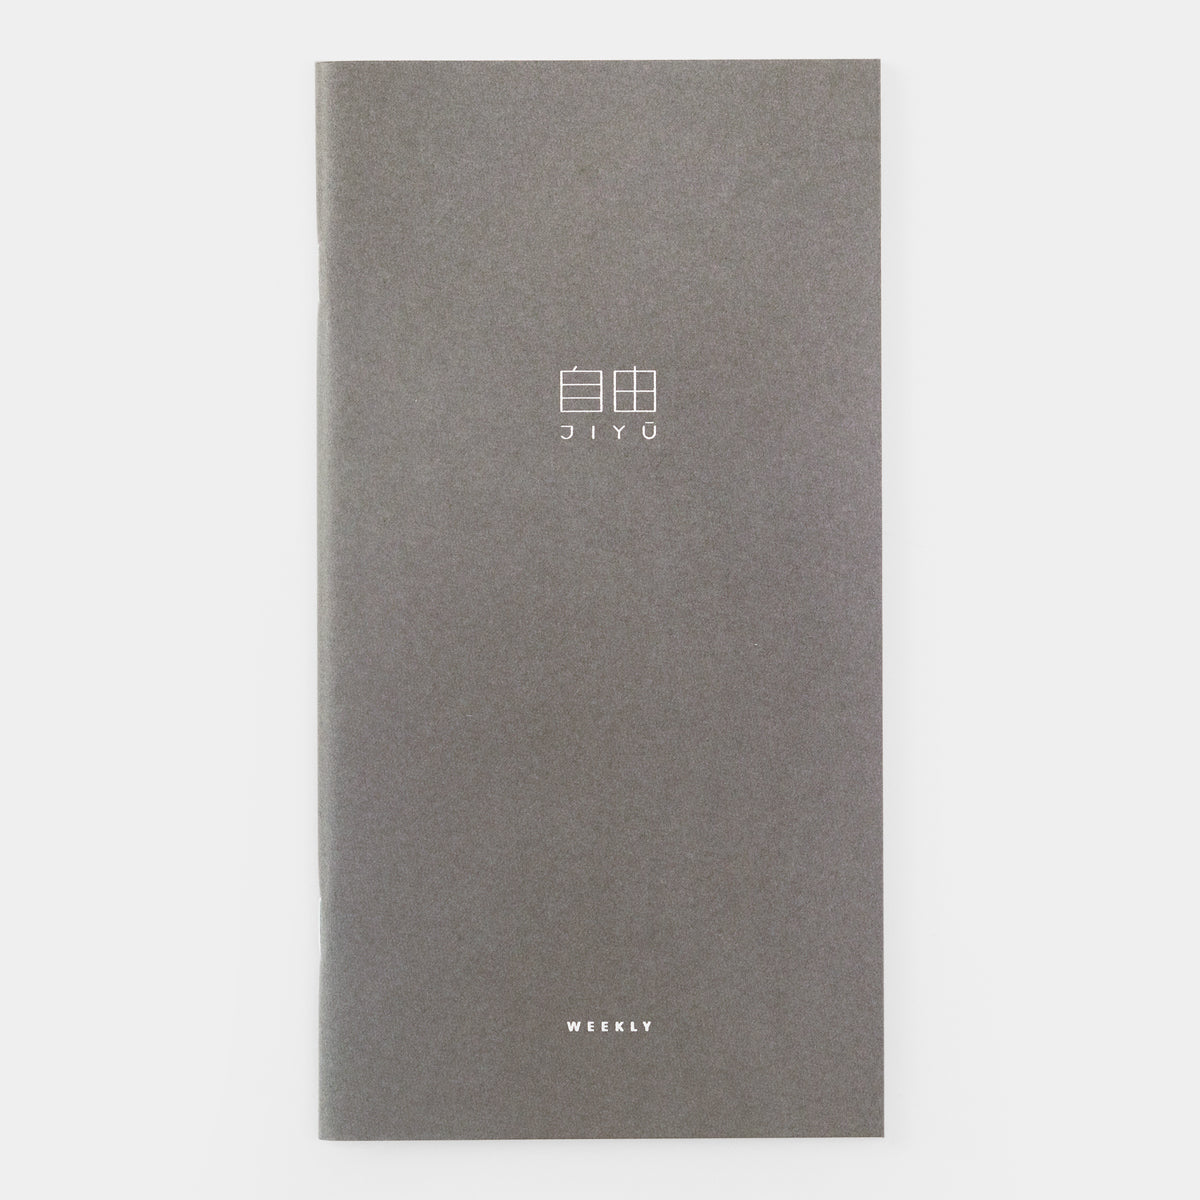 Traveler's Notebook Refill Baum-kuchen Lightweight Paper Weekly Free